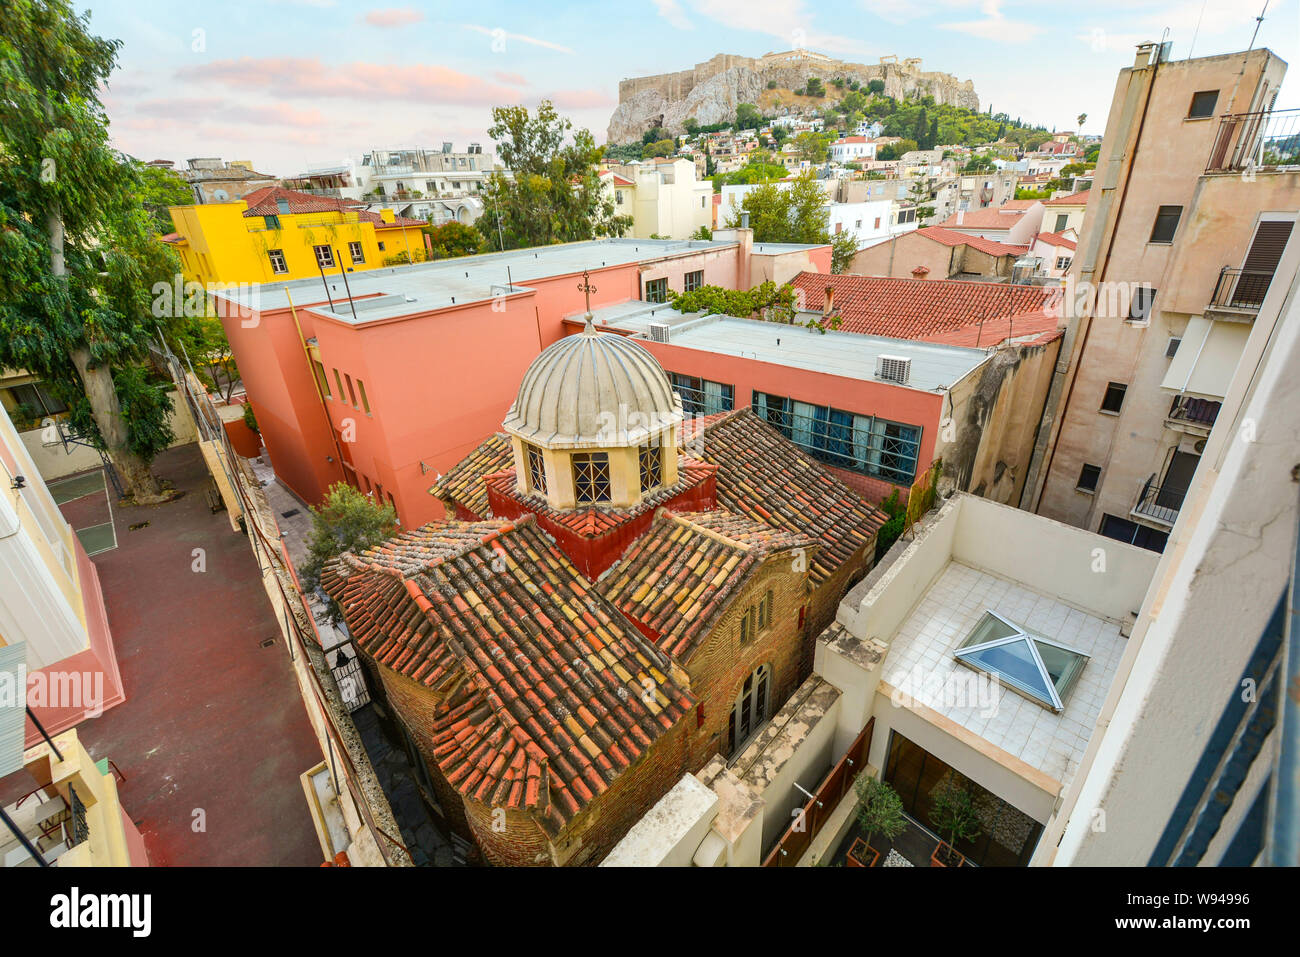 Eine antike griechische orthodoxe Kirche ist in Zwischen mehr moderne Gebäude im historischen Zentrum von Athen, Griechenland gepresst, mit Blick auf die Akropolis Hügel hinter. Stockfoto